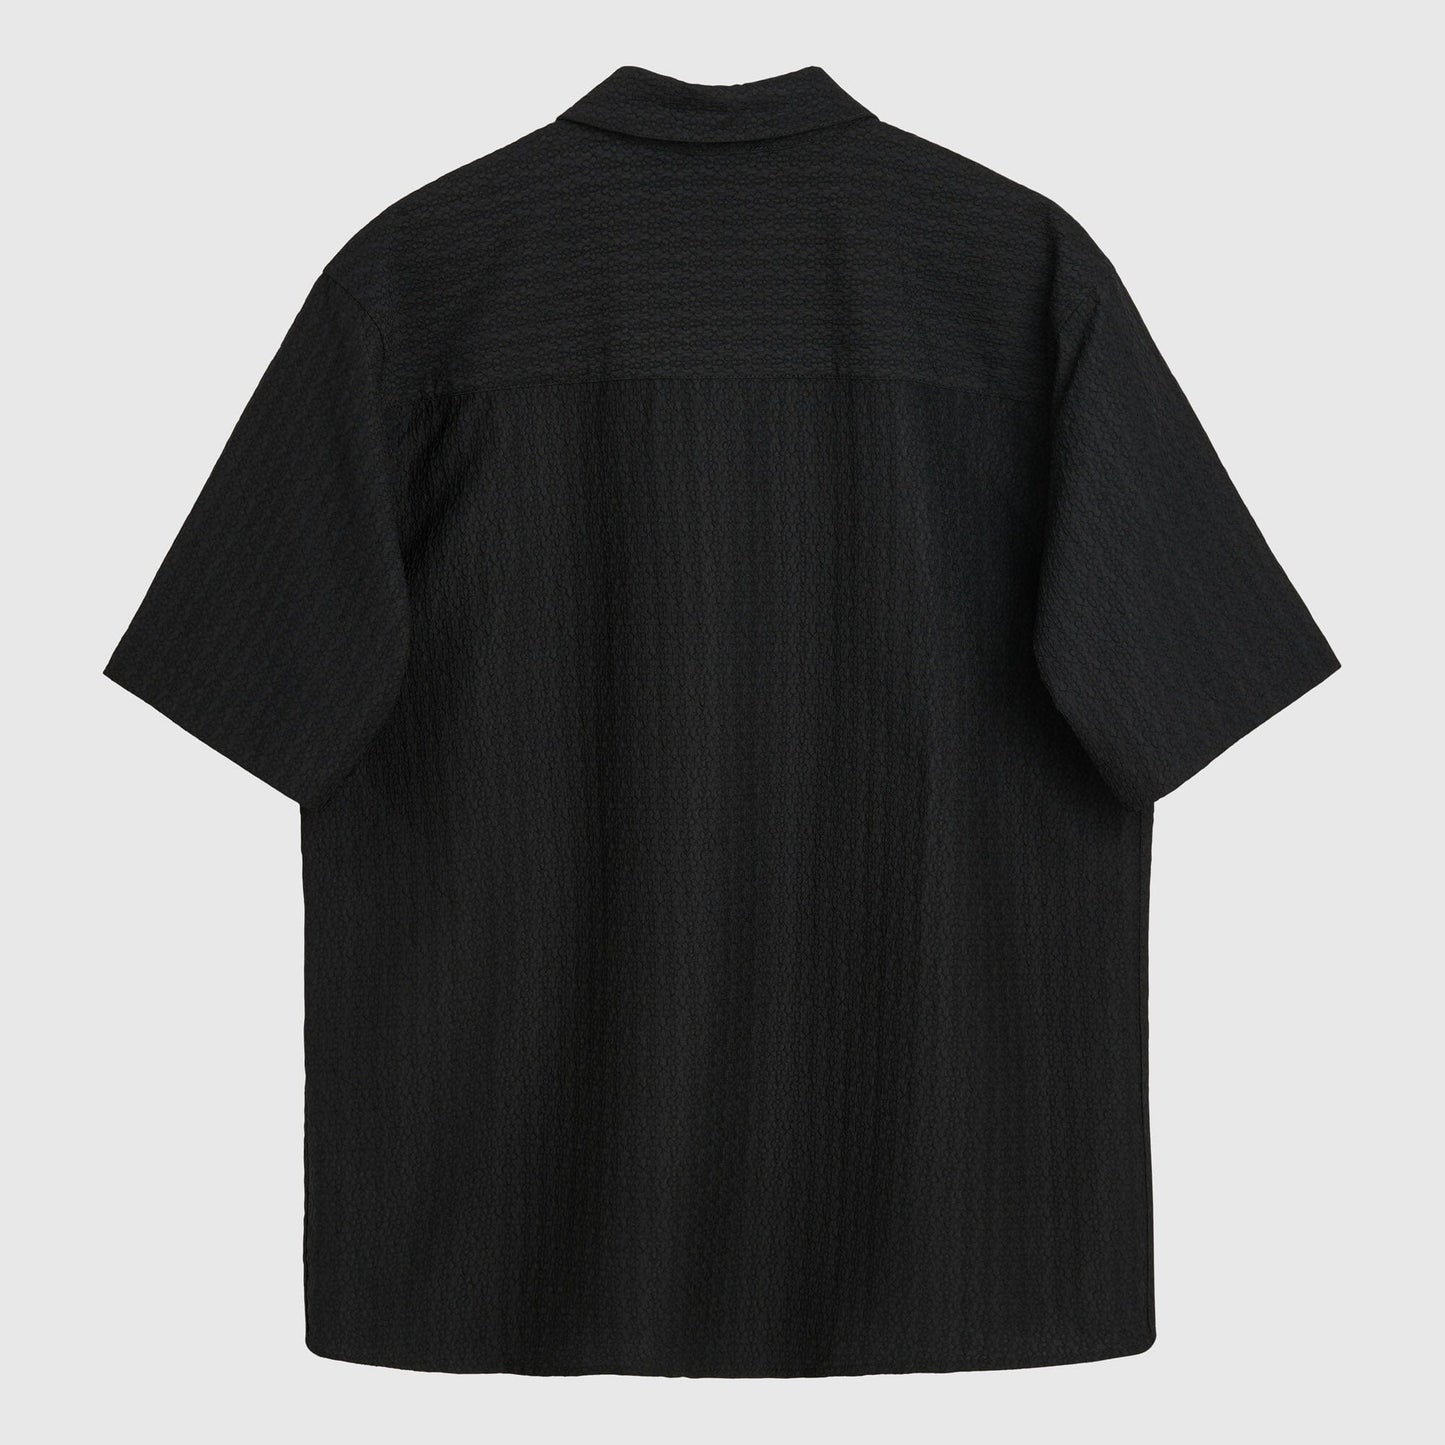 Soulland Devin Shirt - Black Shirt Soulland 